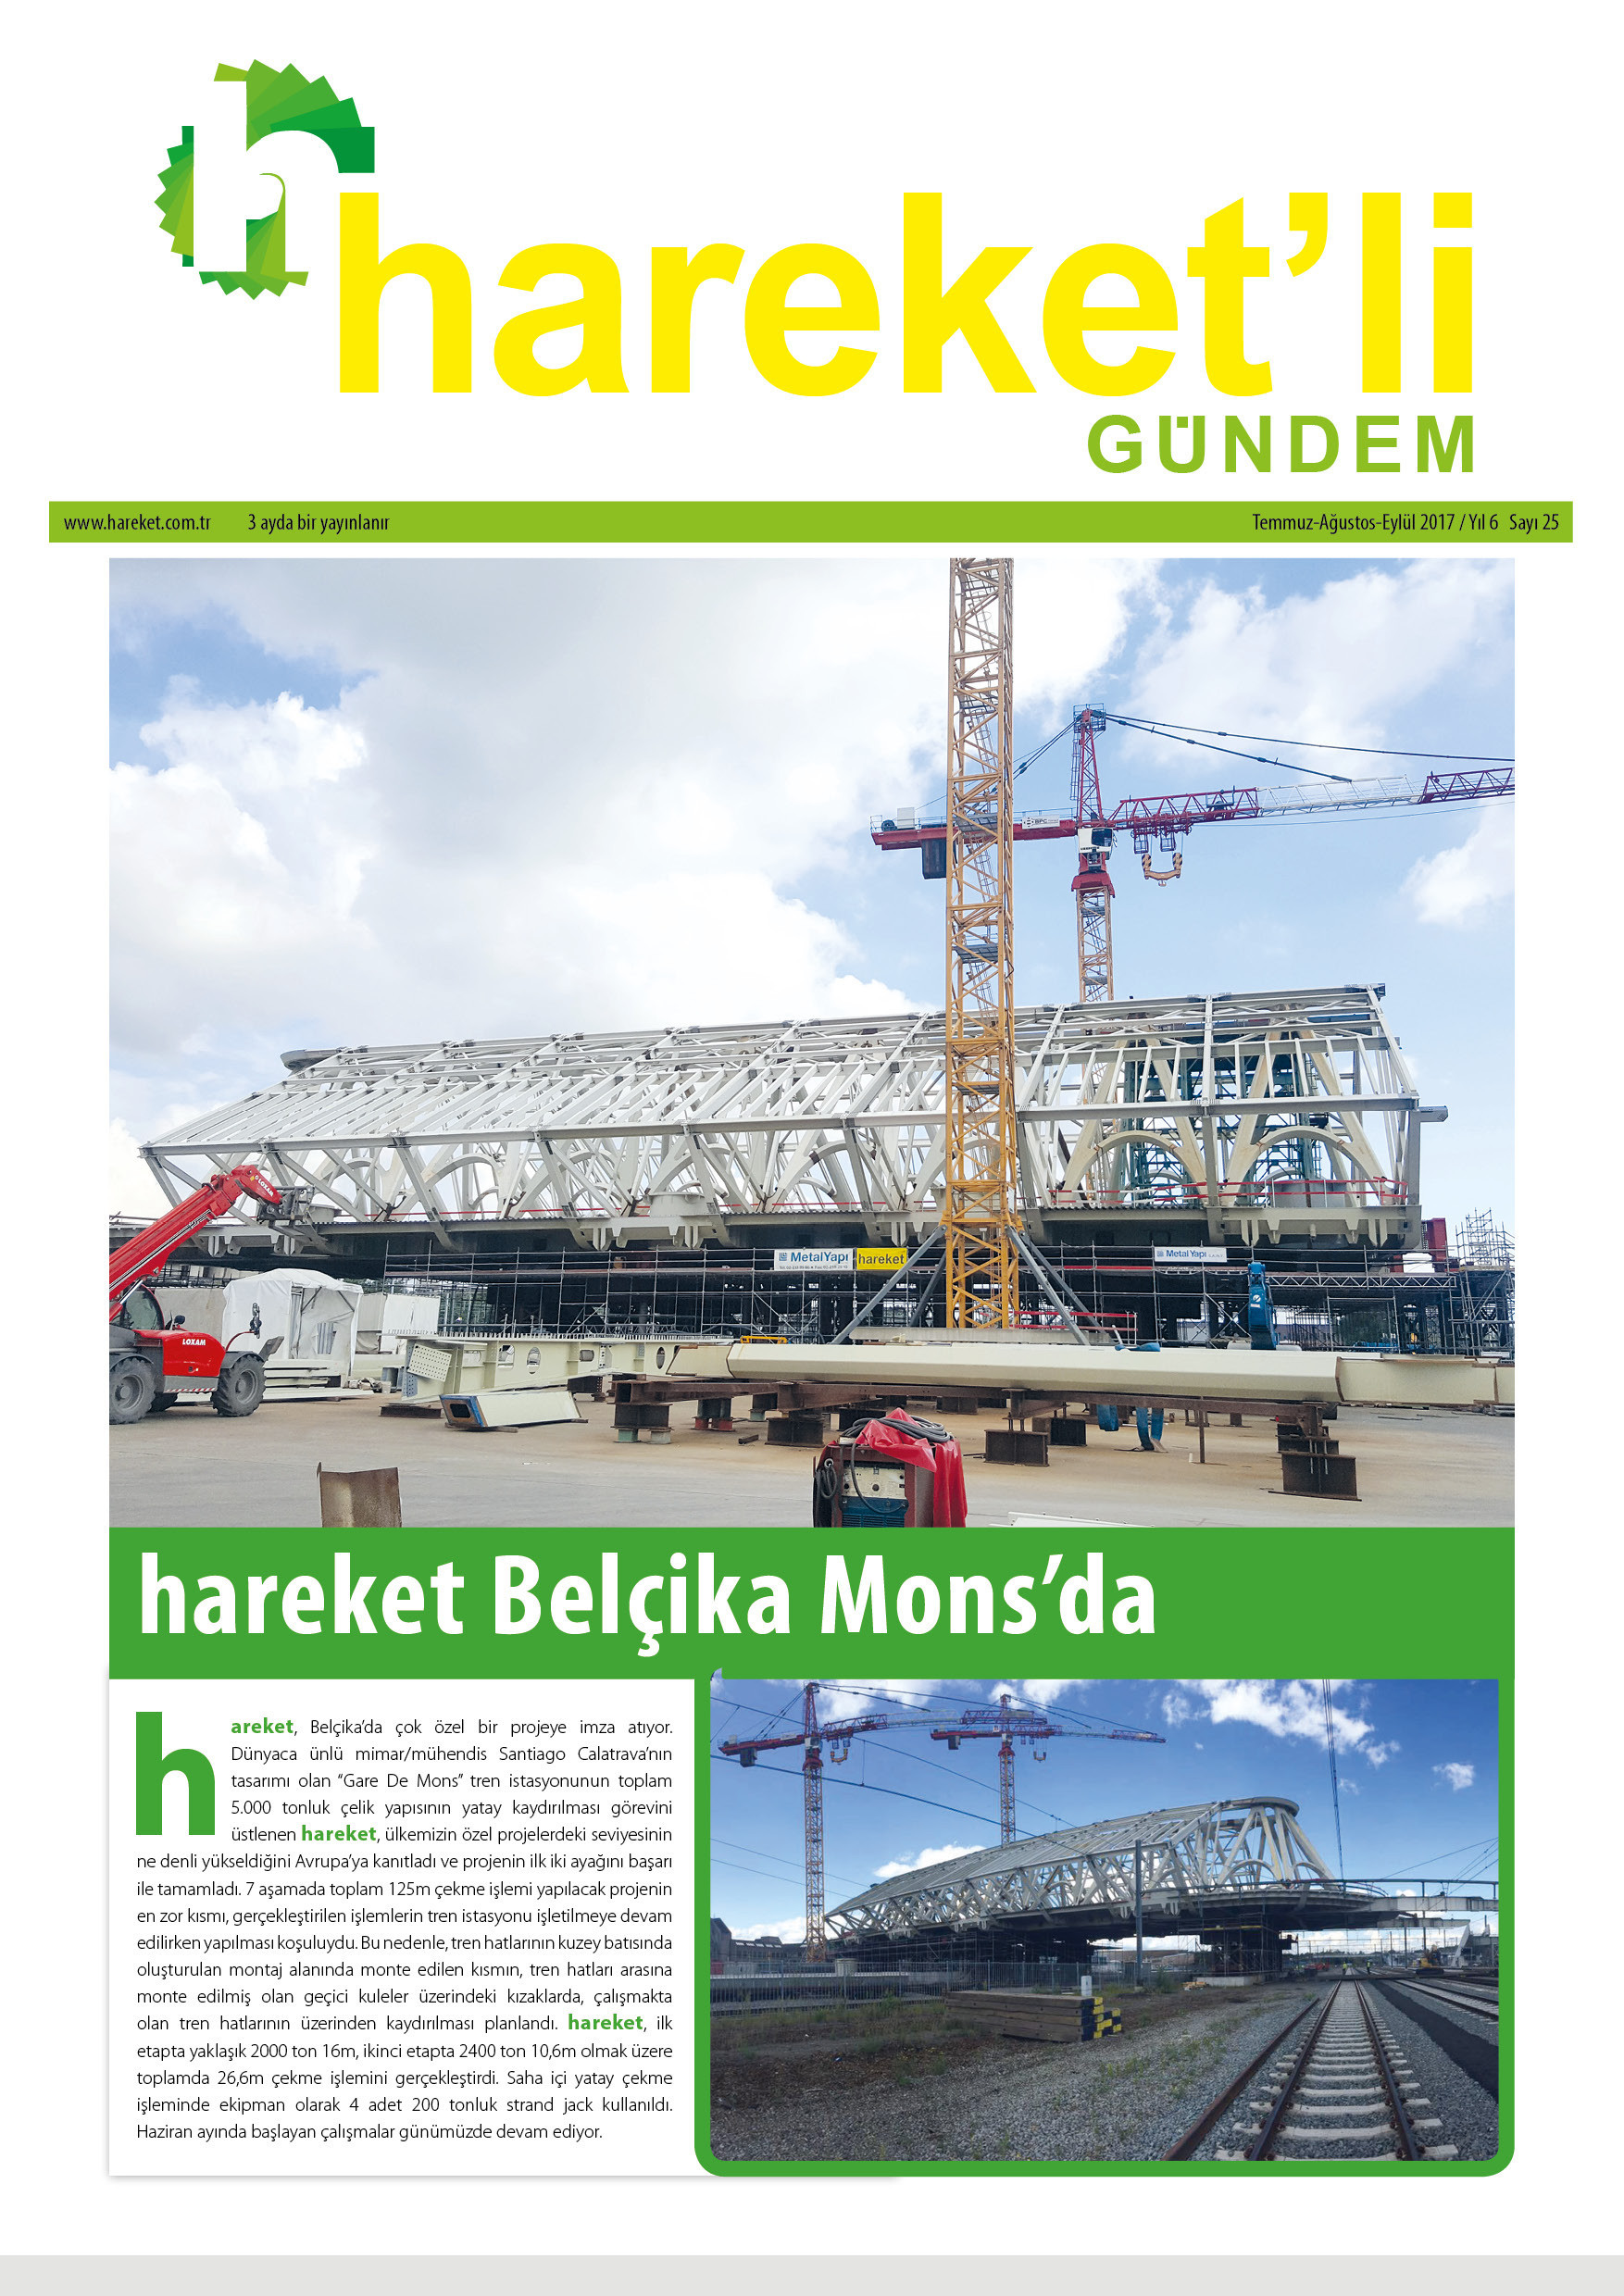 Hareket'li Gündem Magazine - ISSUE 25